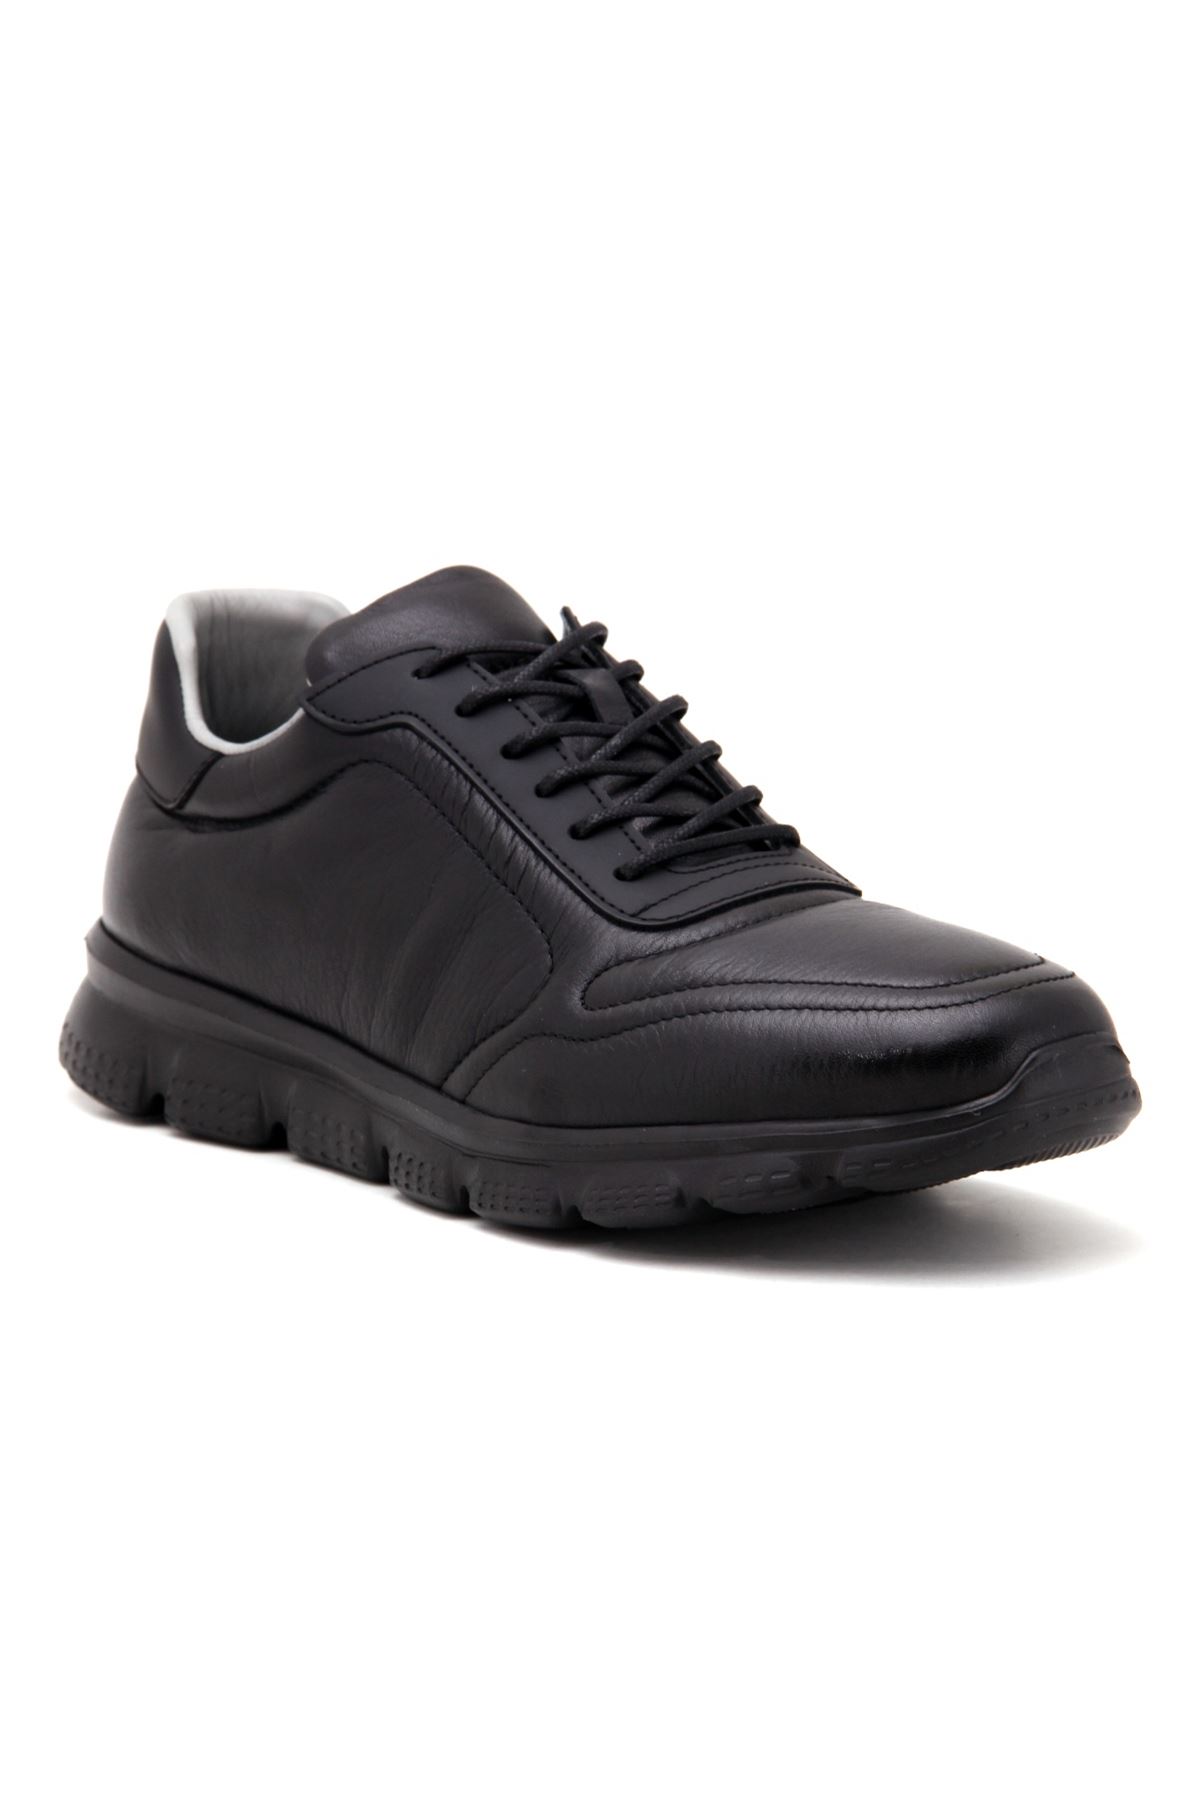 3121 Libero Günlük Erkek Ayakkabı - Siyah